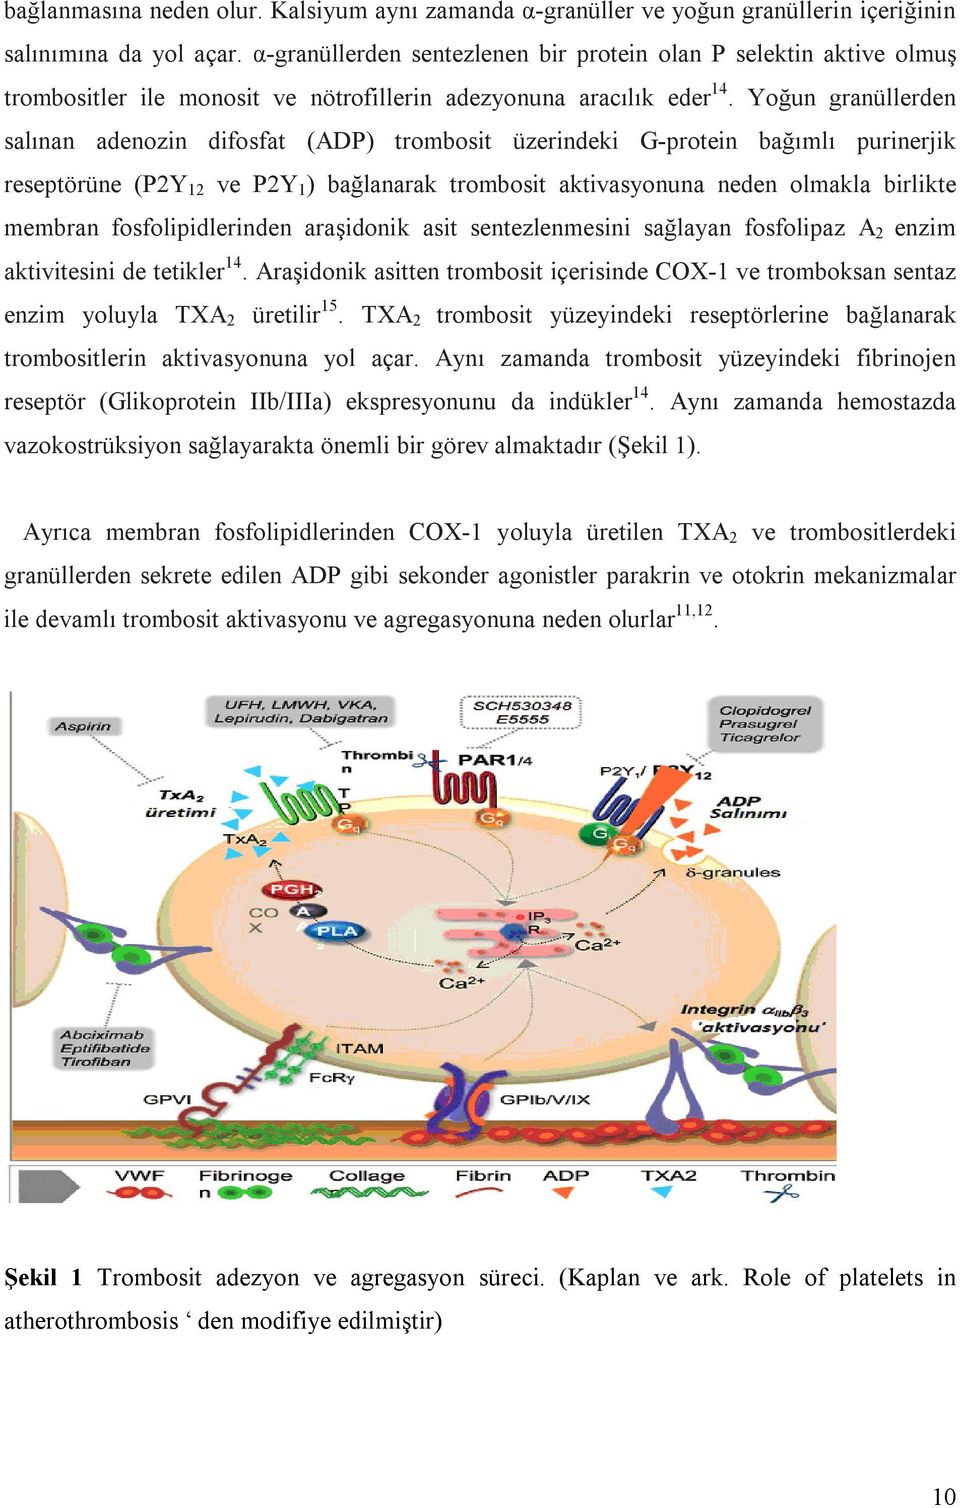 Yoğun granüllerden salınan adenozin difosfat (ADP) trombosit üzerindeki G-protein bağımlı purinerjik reseptörüne (P2Y 12 ve P2Y 1 ) bağlanarak trombosit aktivasyonuna neden olmakla birlikte membran